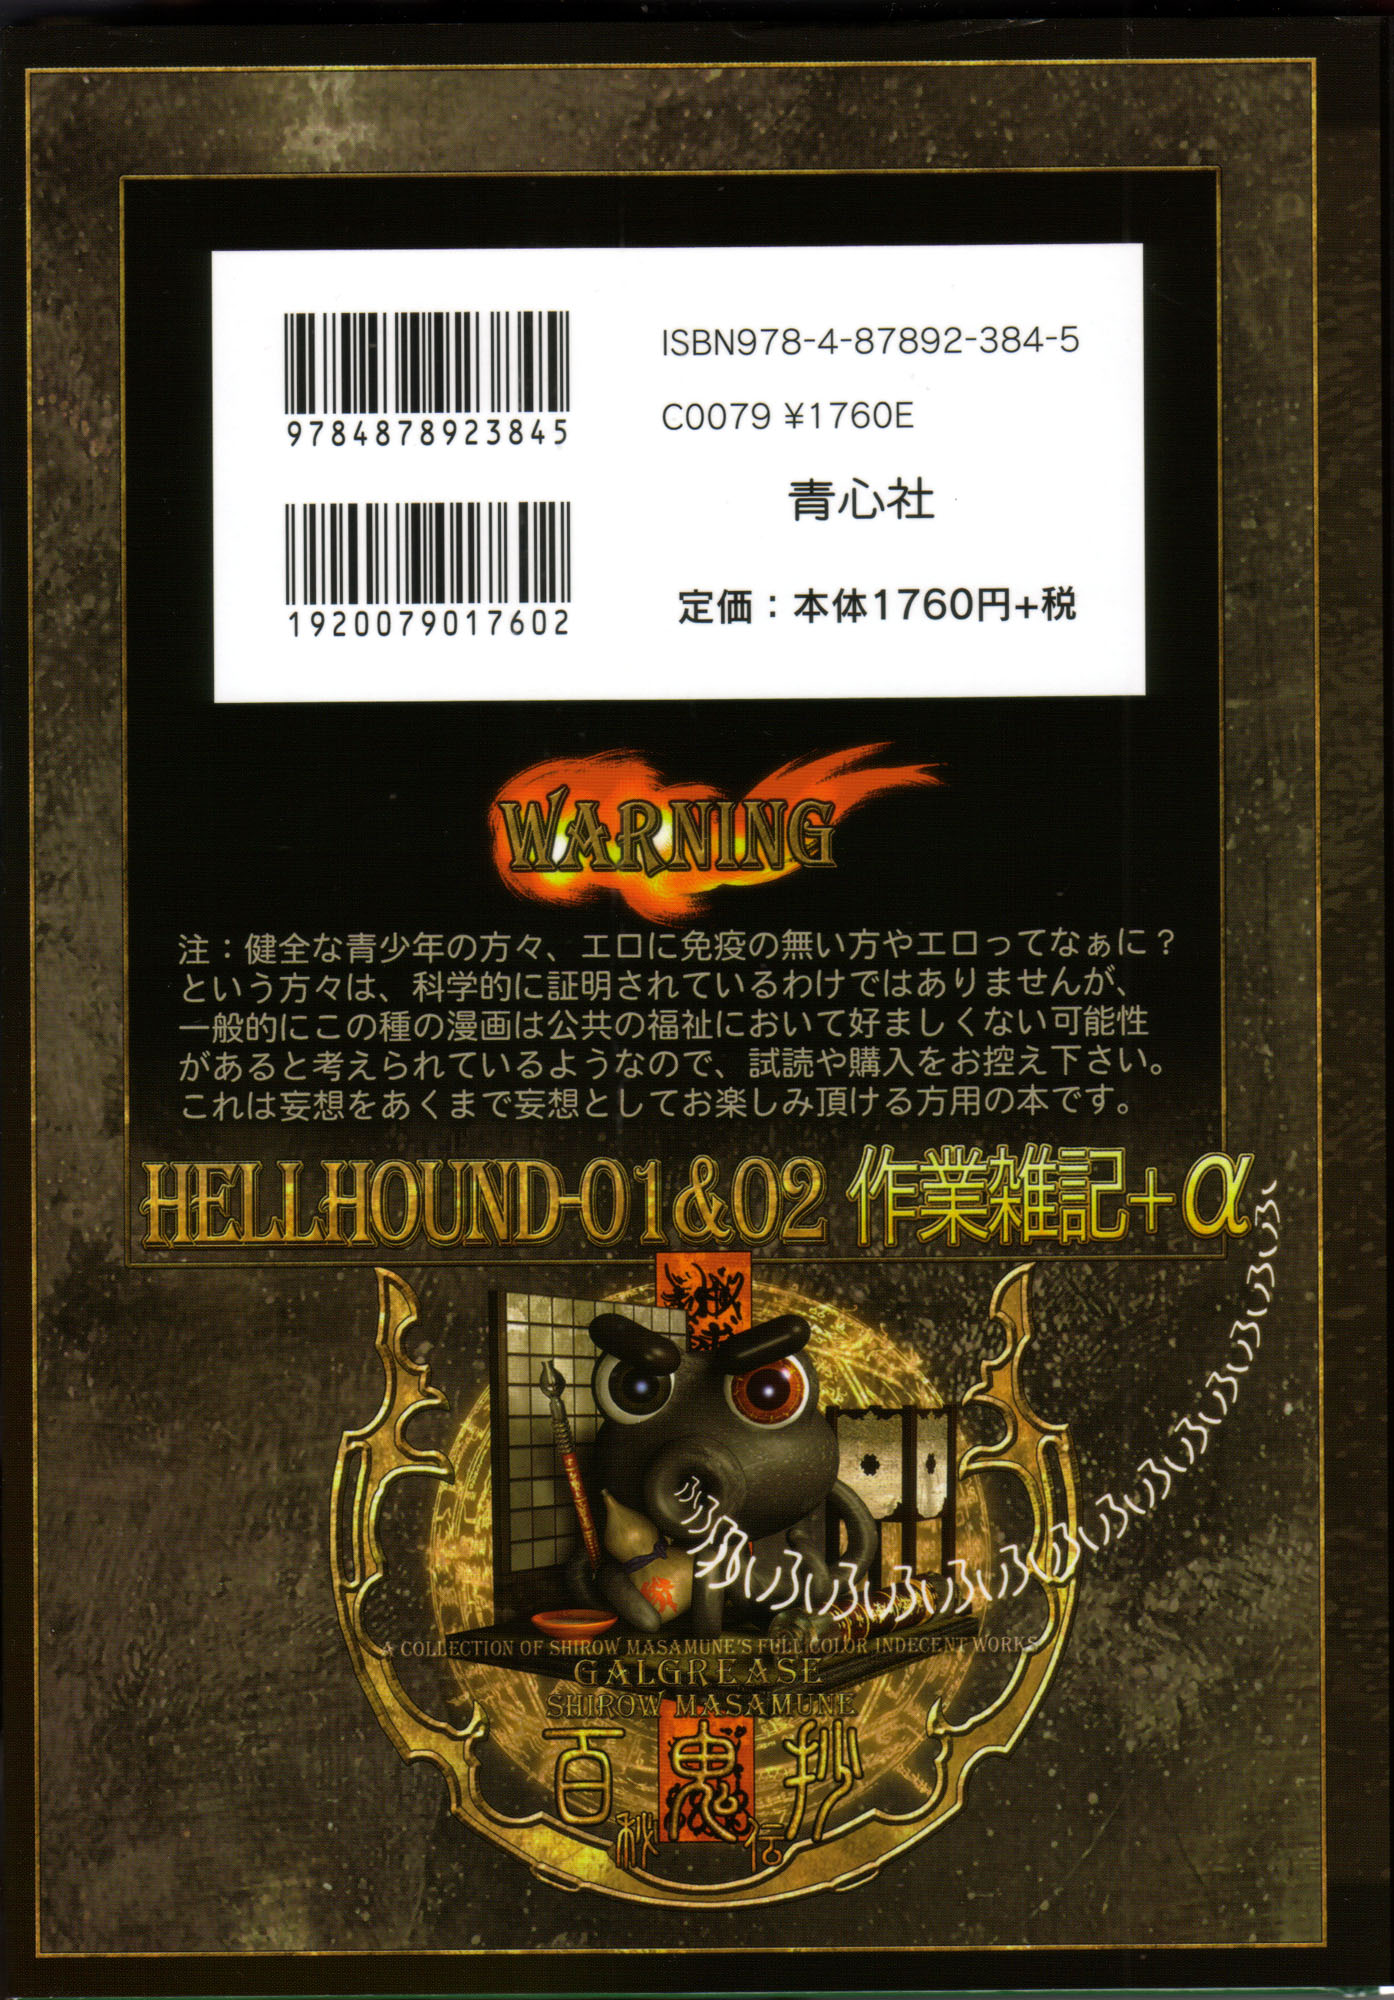 Shirow Masamune - PIECES 7 HELL HOUND 01&amp;02 Sagyousakkai